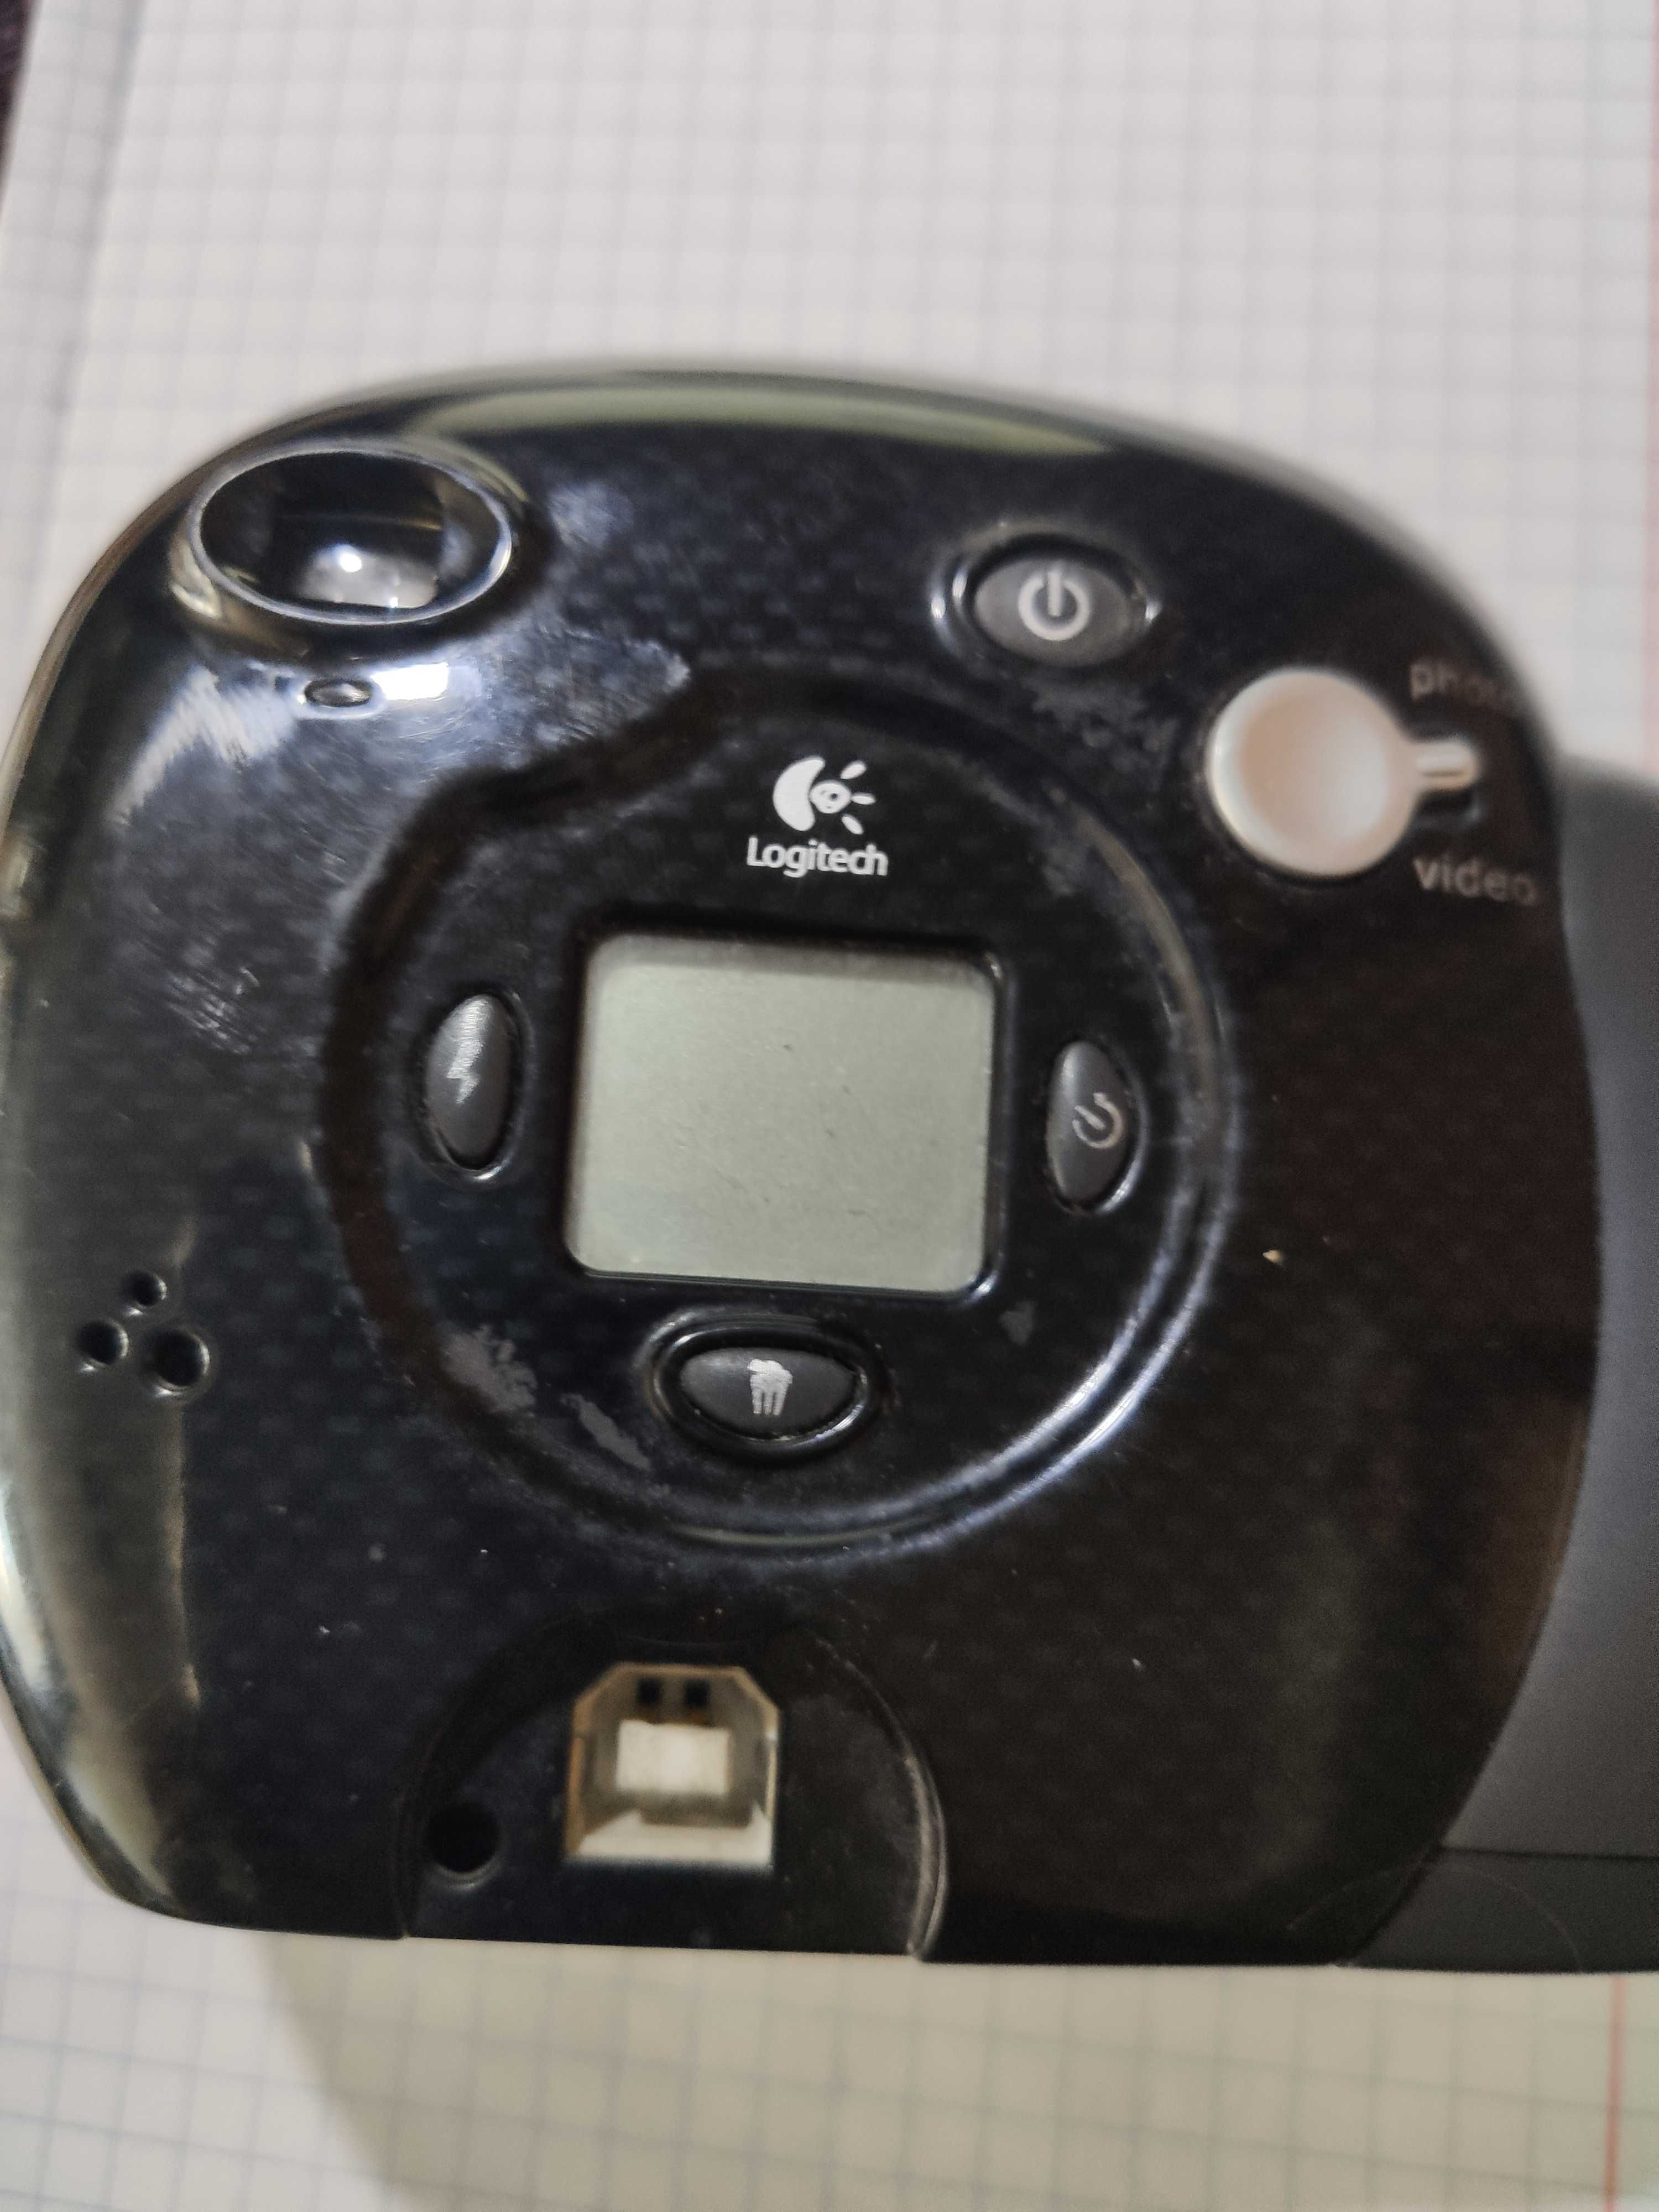 kamera internetowa  aparat